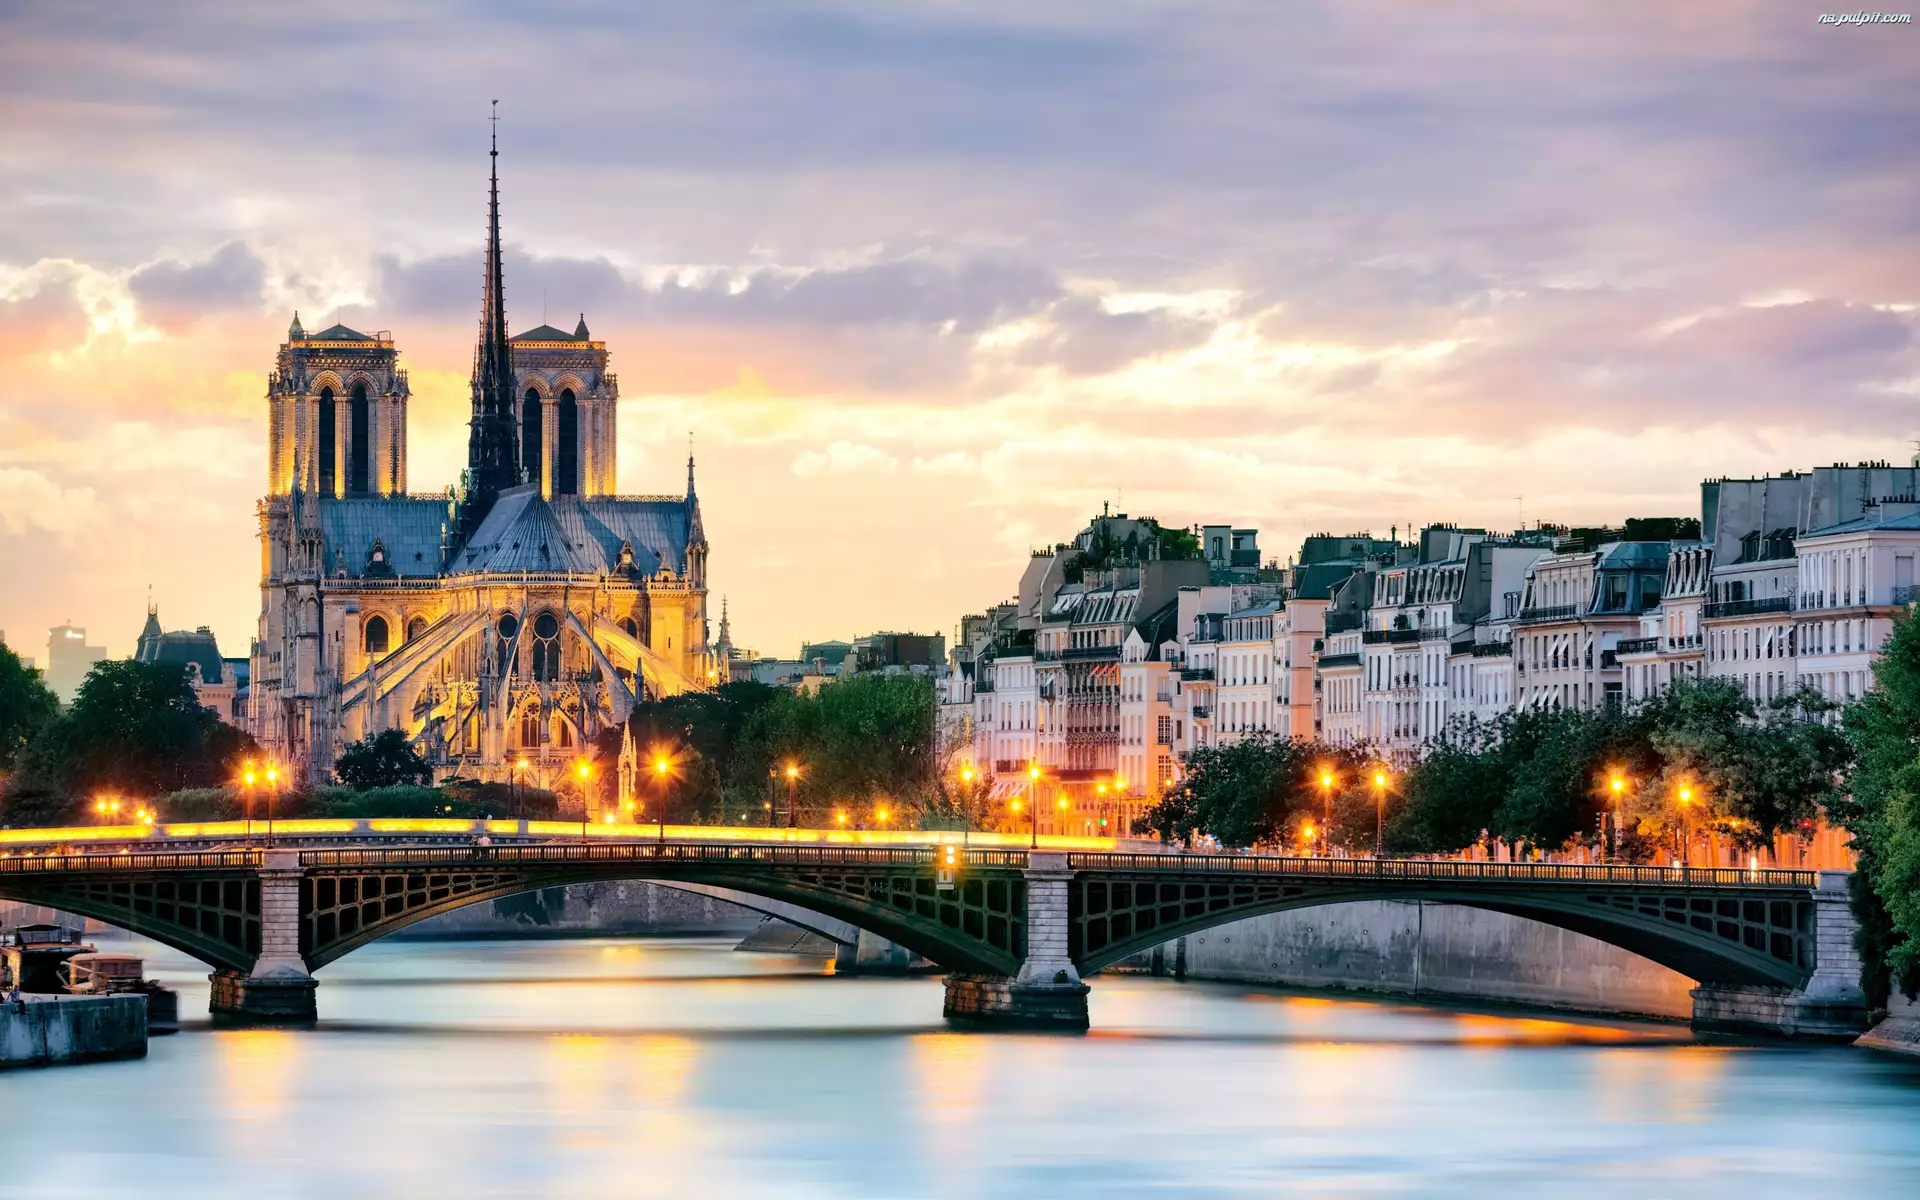 Katedra, Rzeka, Notre Dame, Most